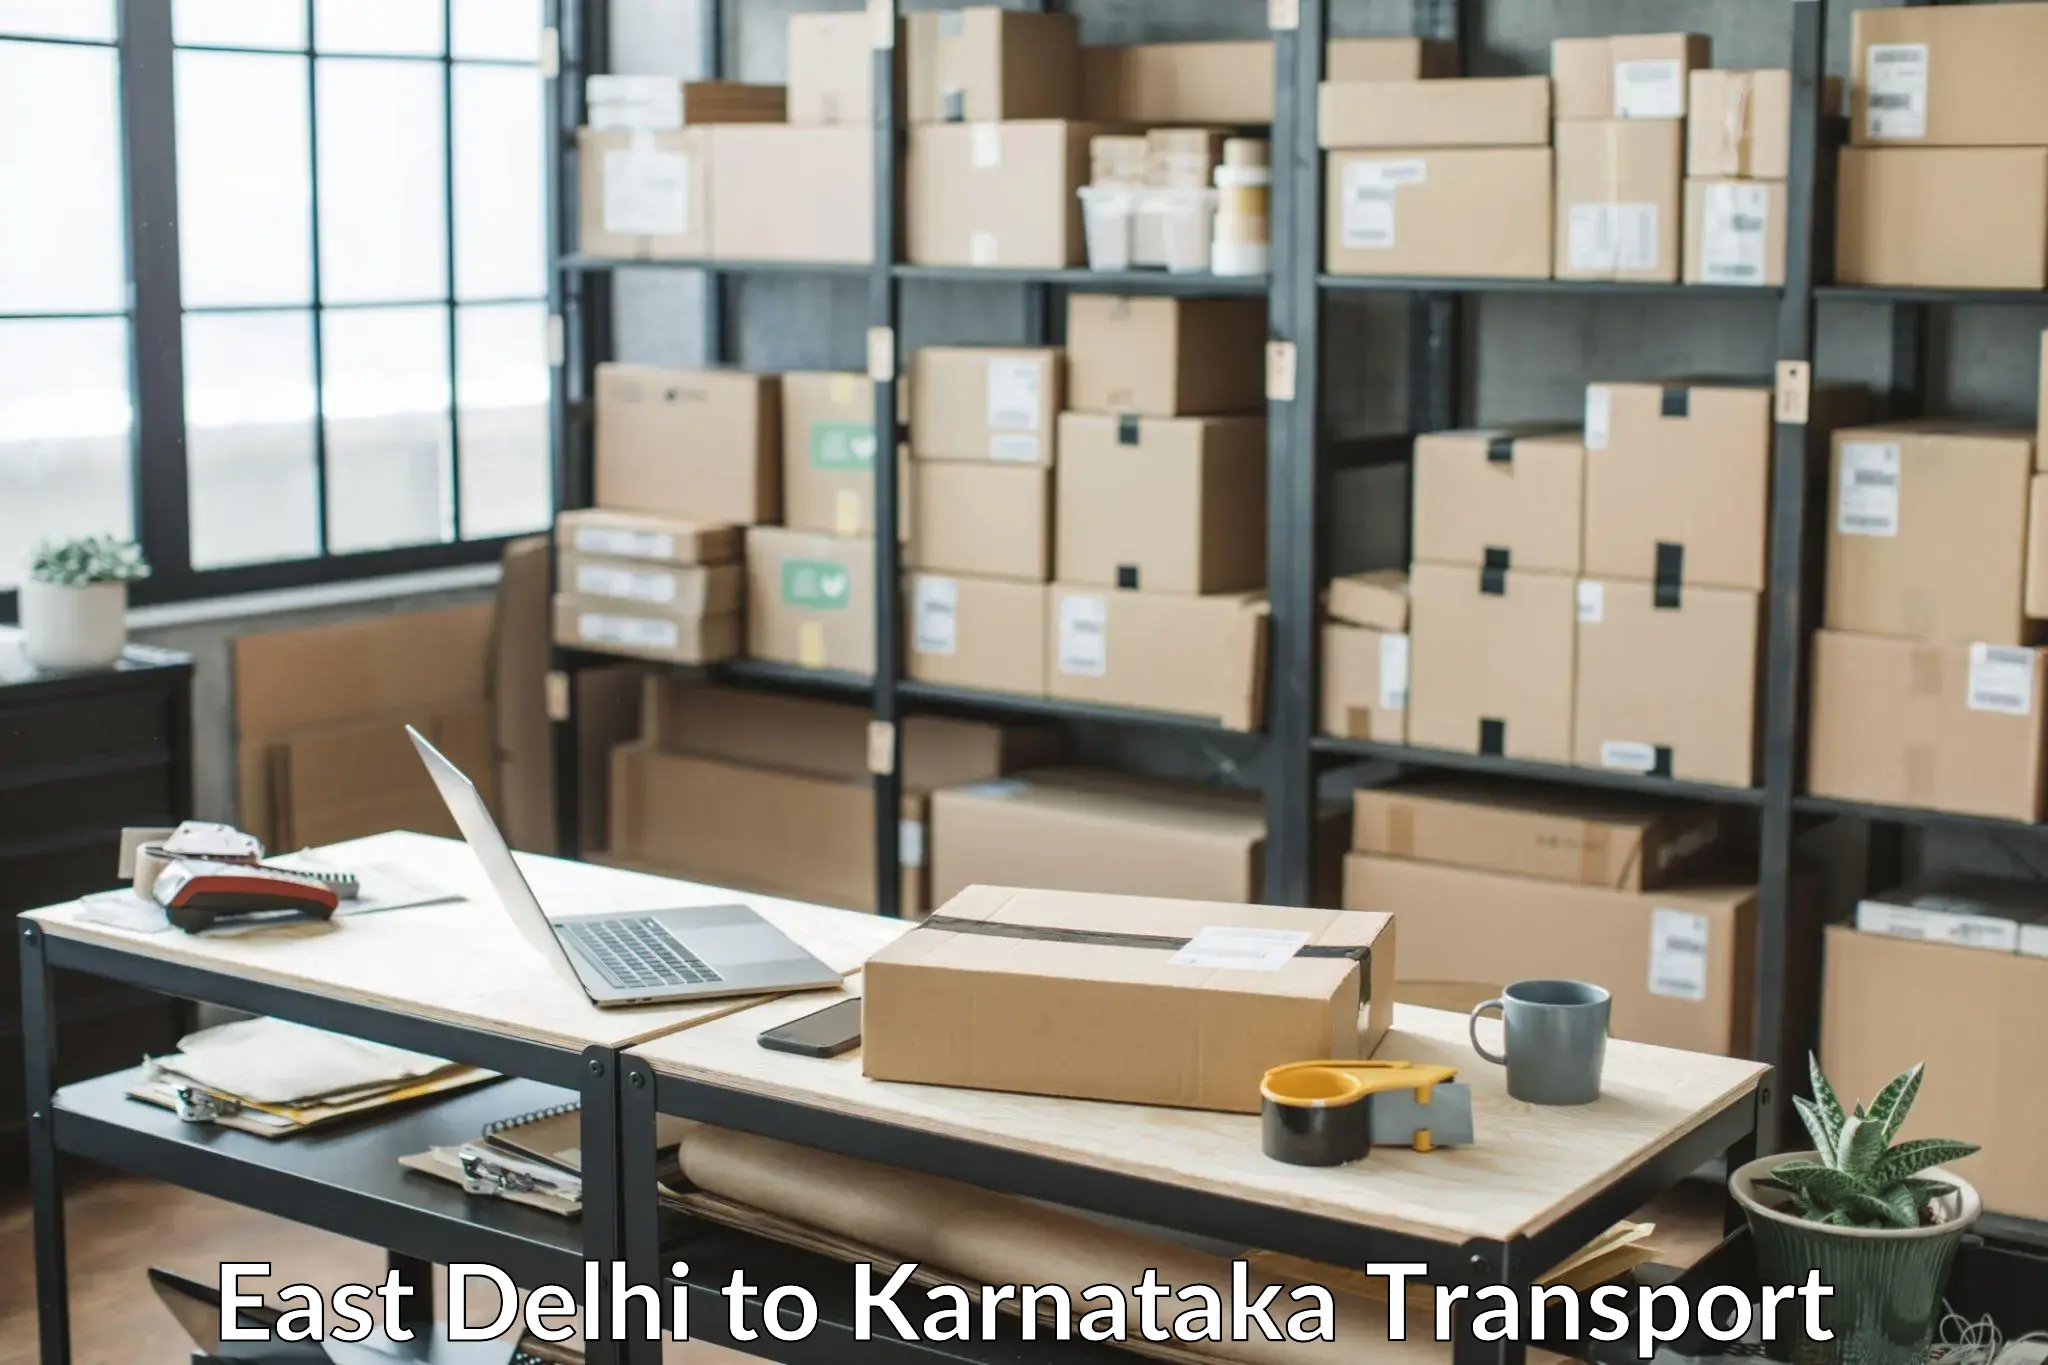 Road transport online services East Delhi to Kanjarakatte